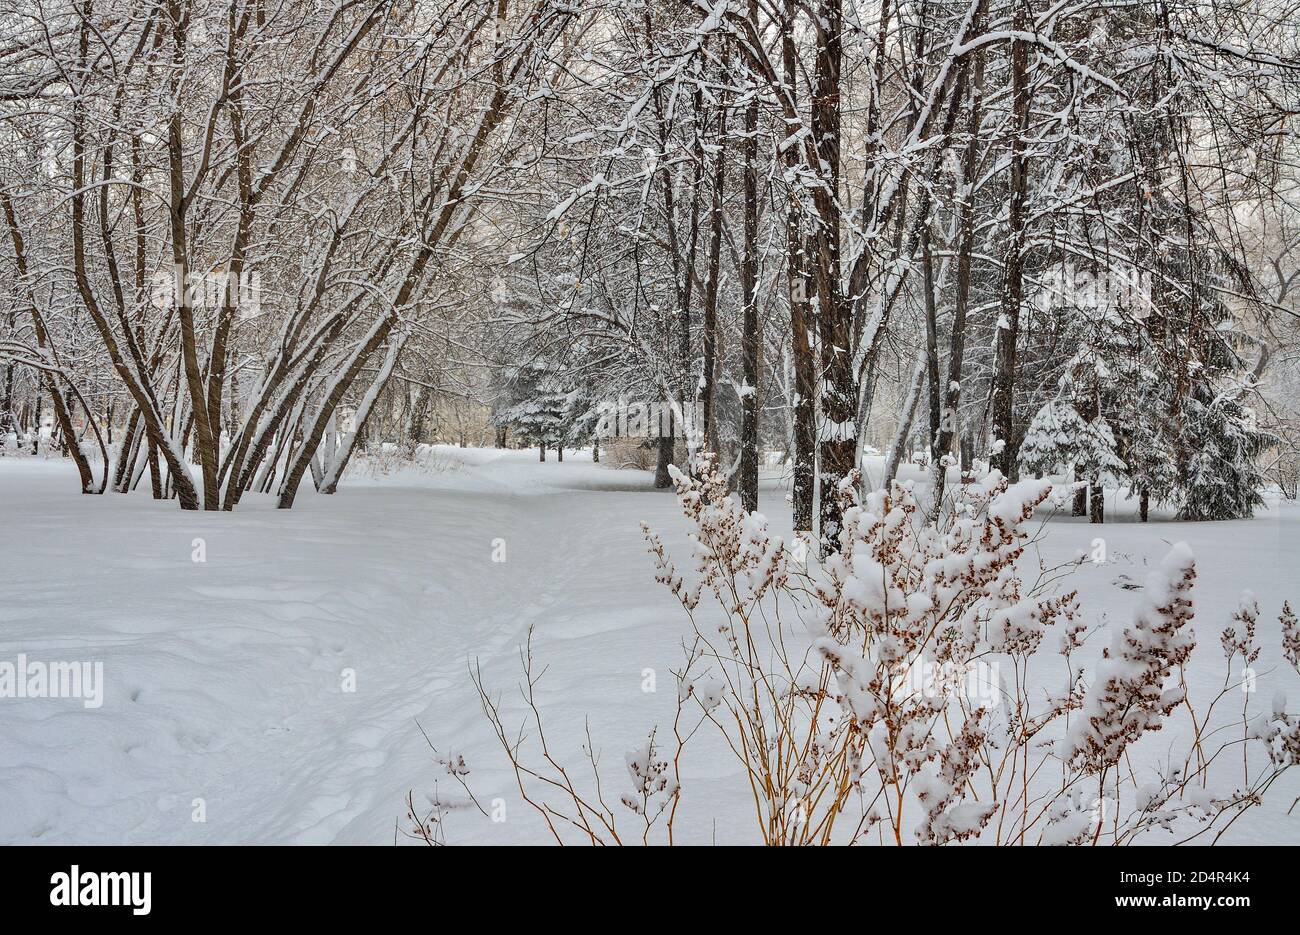 Bellezza del paesaggio invernale nel parco cittadino innevato. Wonderland con neve bianca e alberi ricoperti di brina e cespugli - bella favola invernale. Secco gr Foto Stock